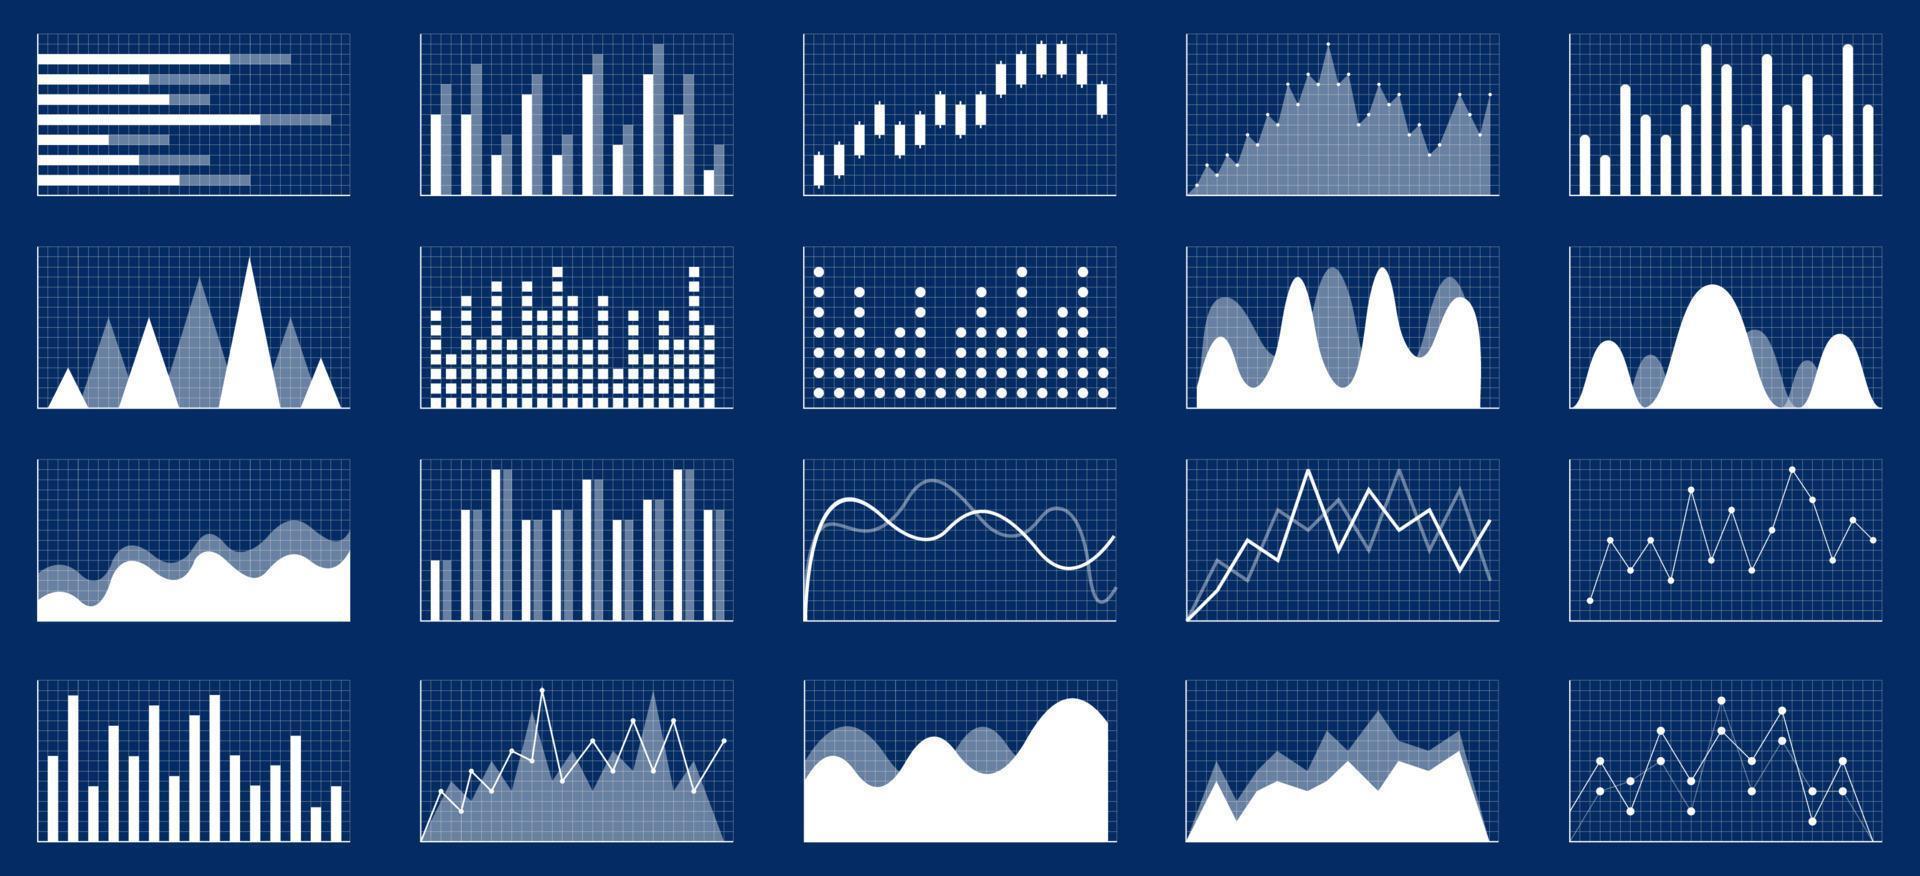 conjunto de iconos de gráficos de crecimiento empresarial. icono de vector de estadísticas y análisis de negocios. conjunto de iconos de análisis de gráficos y tablas de negocios.